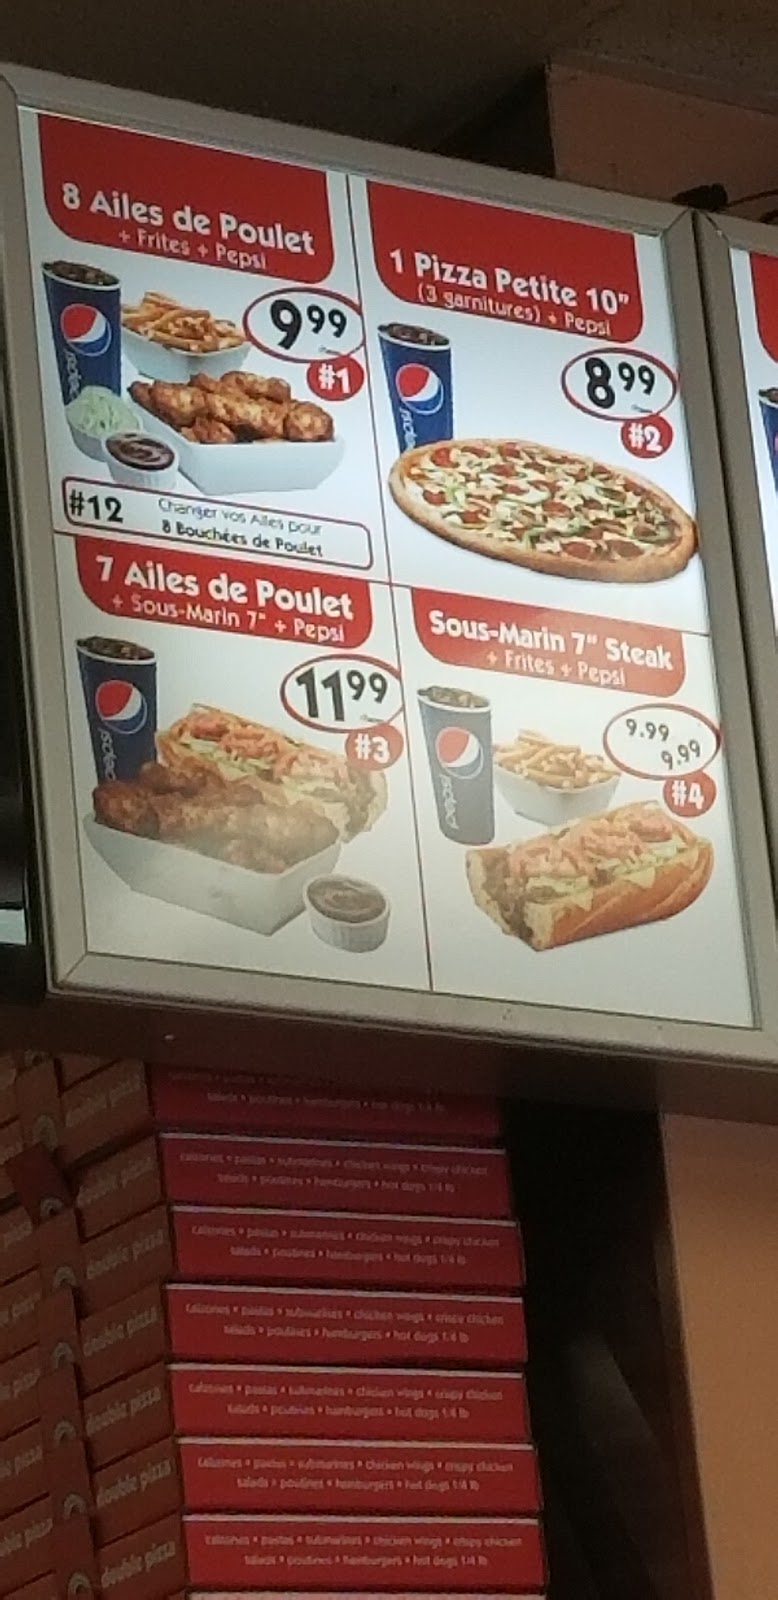 Double Pizza | 4960 Rue de Charleroi, Montréal-Nord, QC H1G 2Z1, Canada | Phone: (514) 343-0343